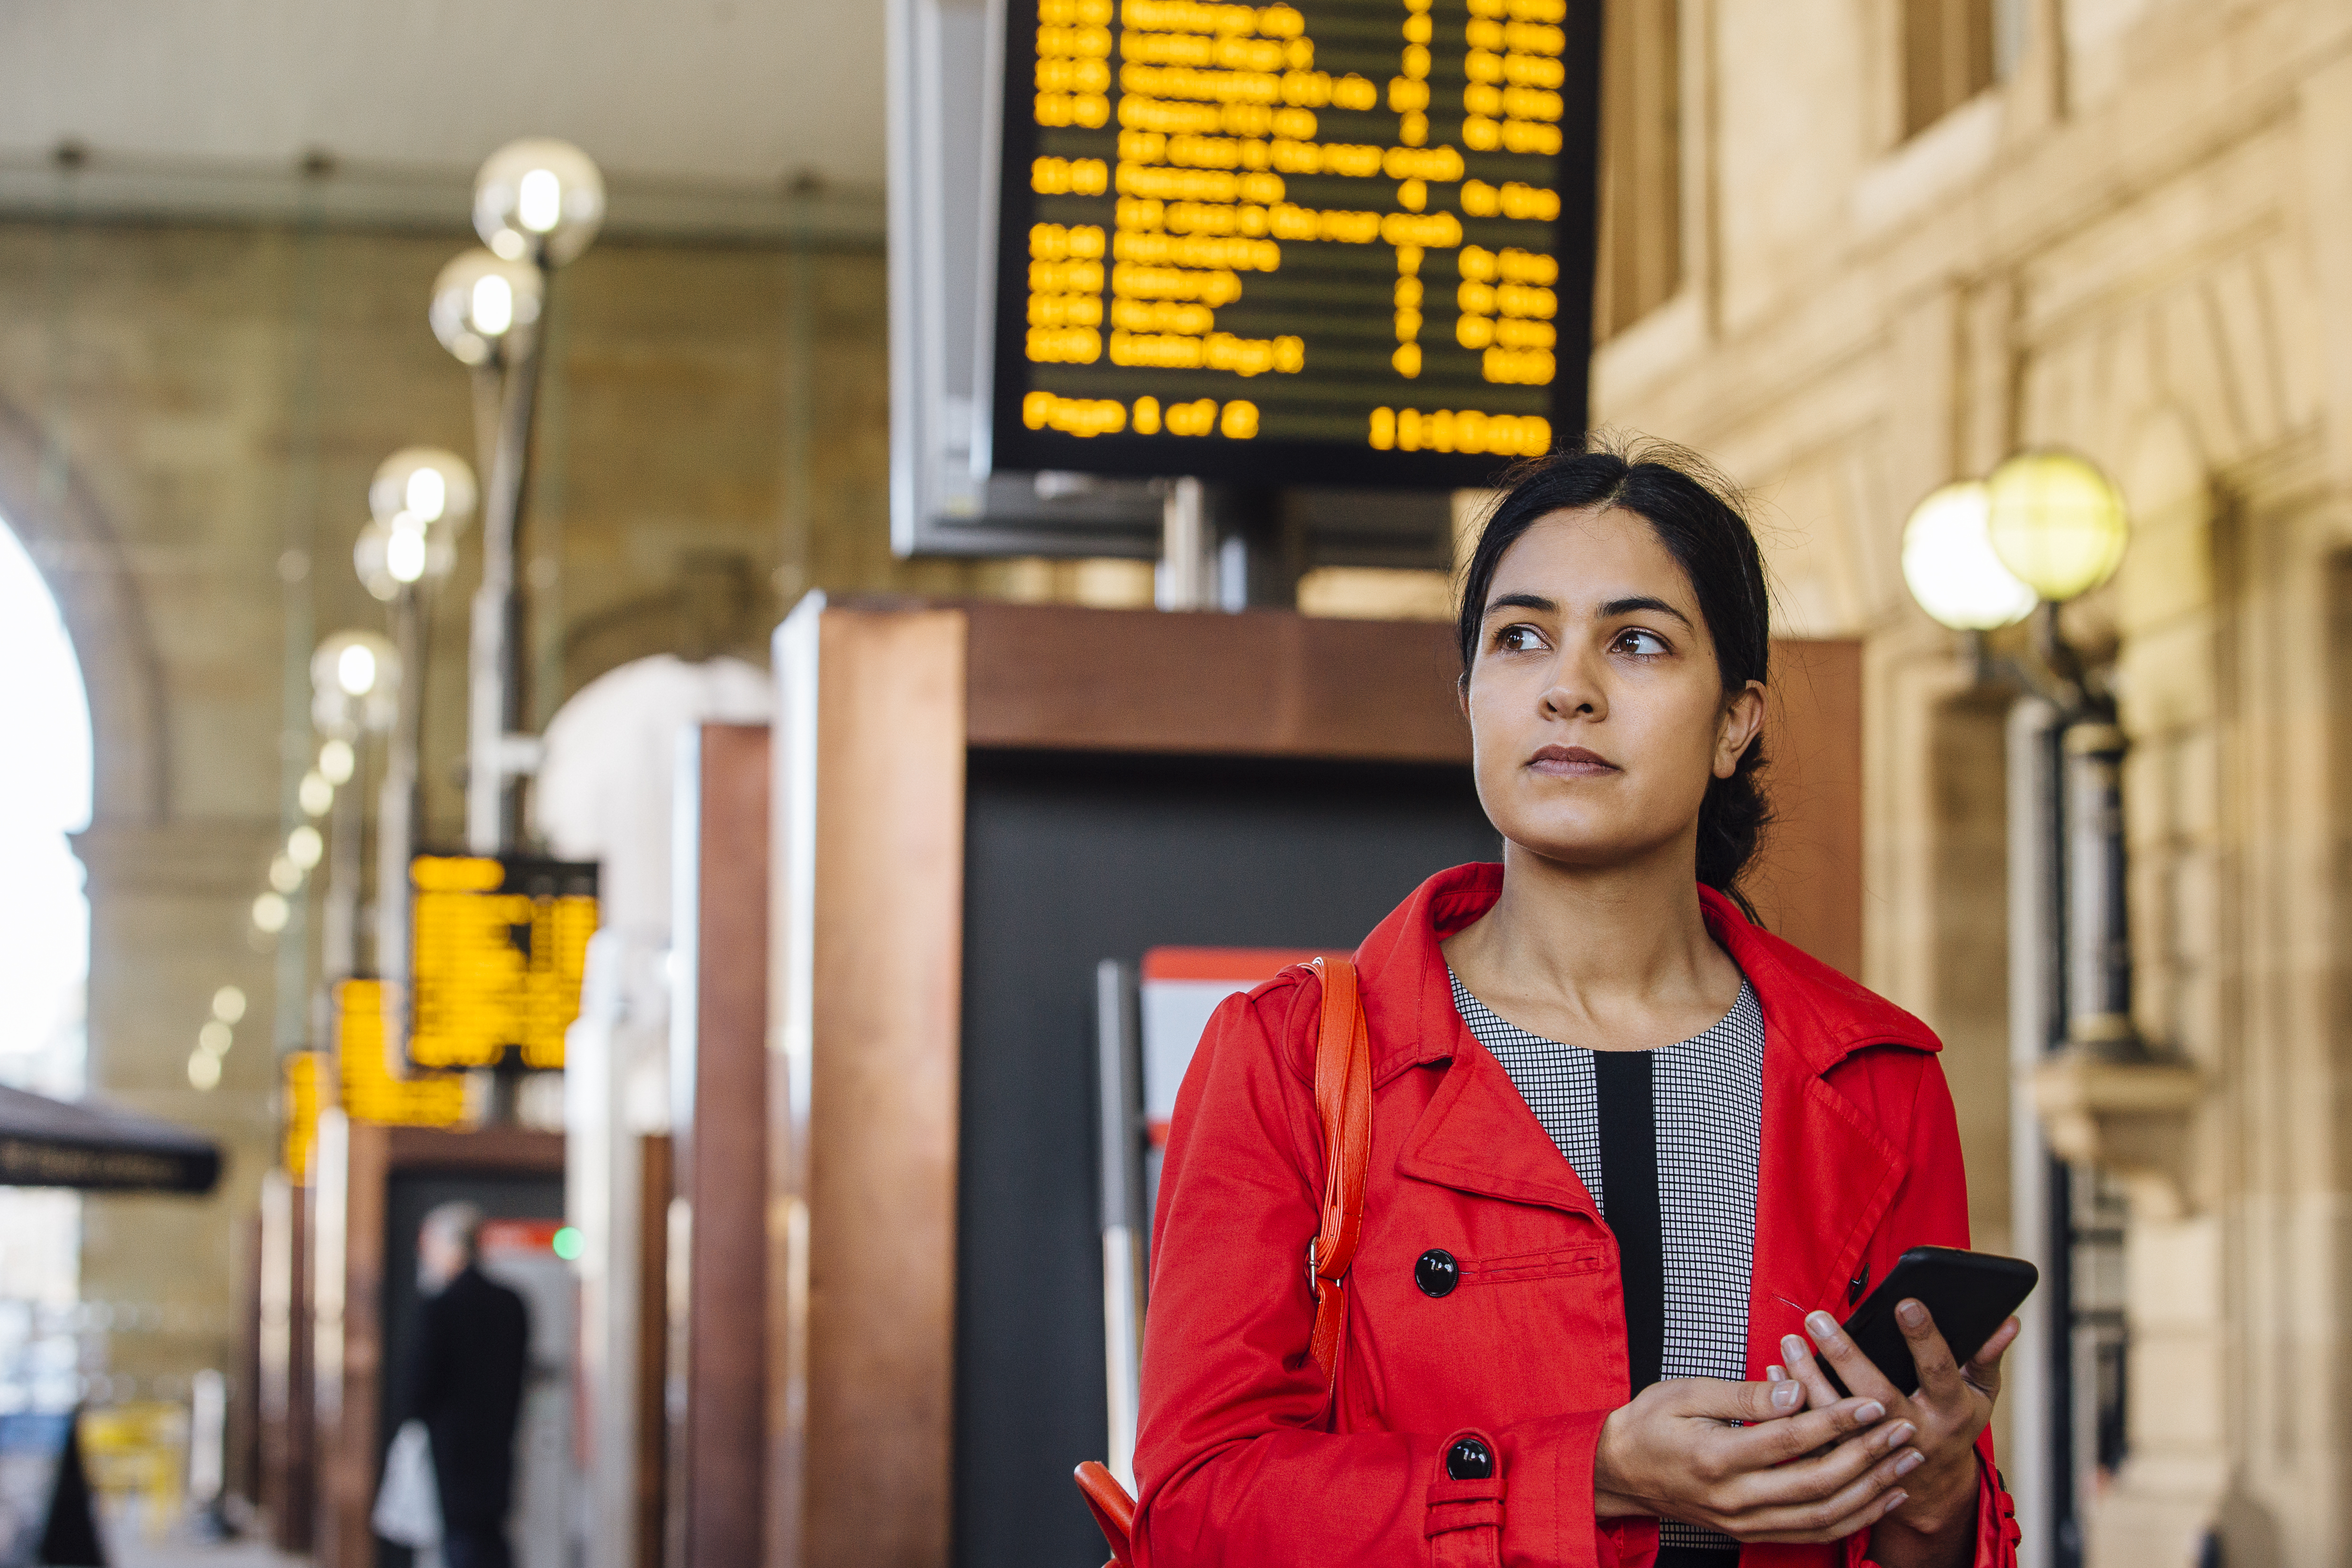 前景中的女性通勤者手持智能手机站在火车站的电子显示屏前面。